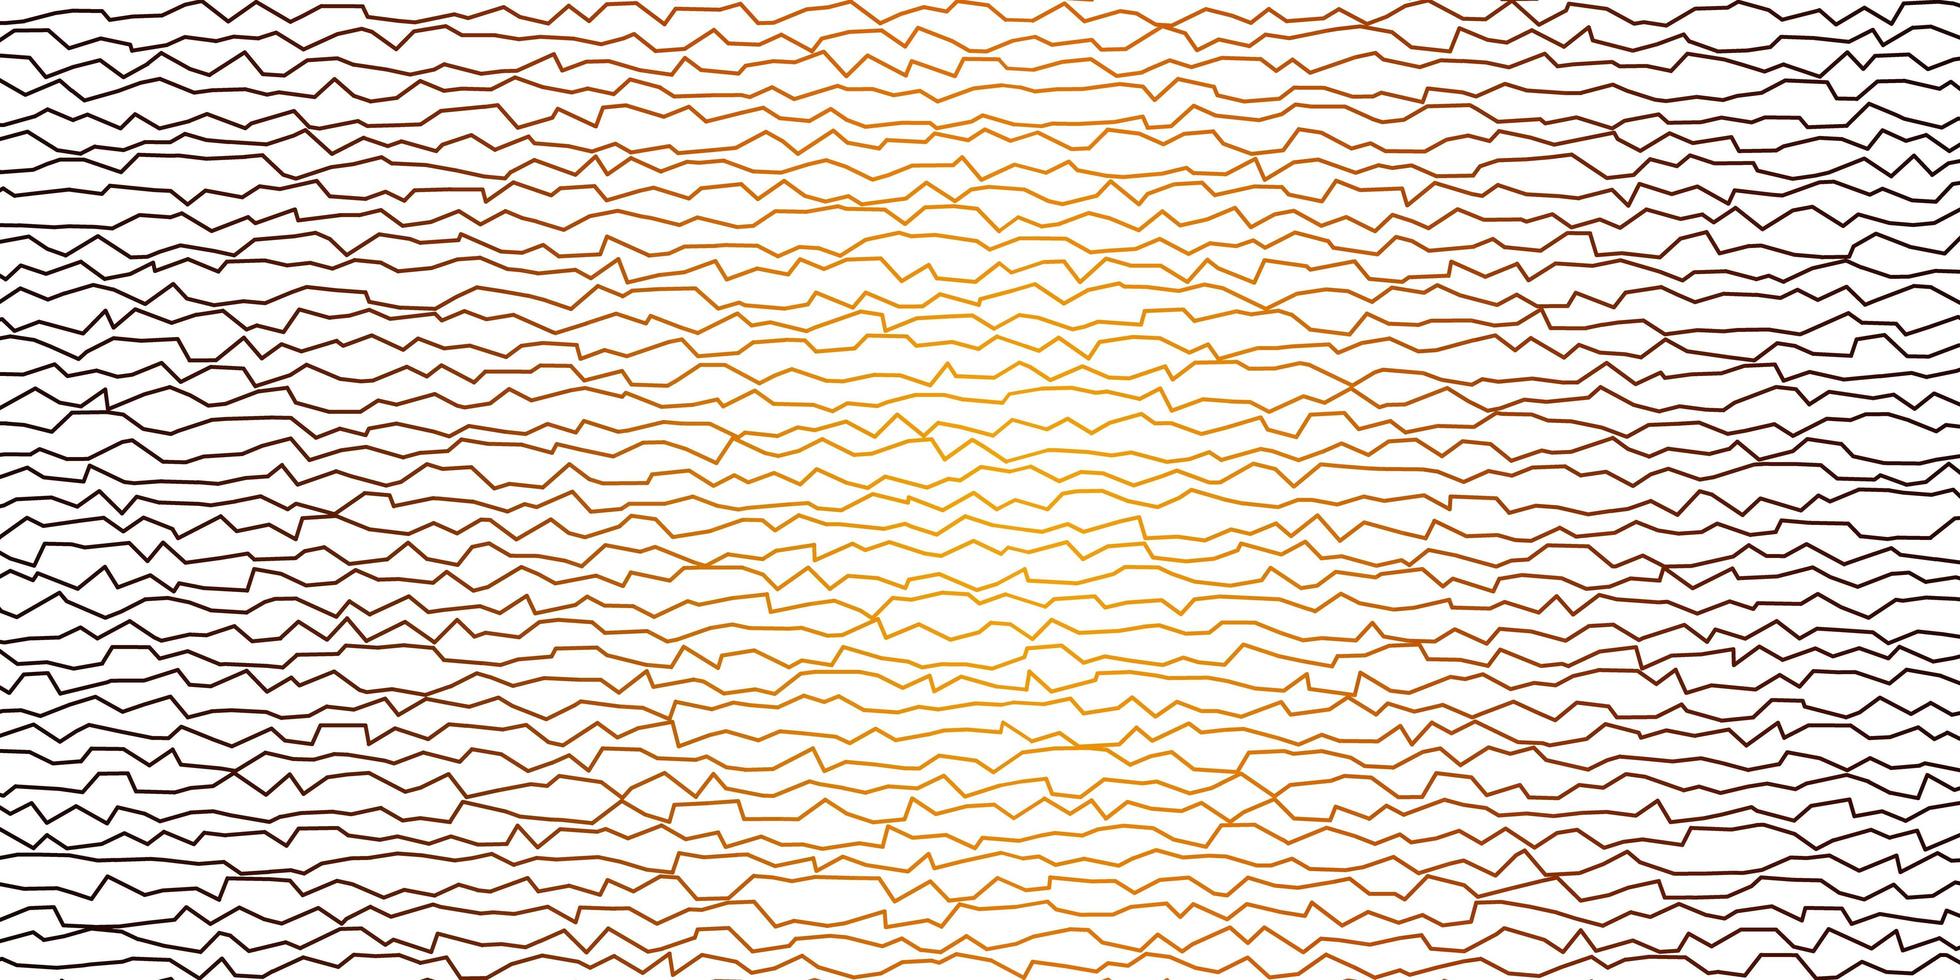 mörk orange vektor mönster med böjda linjer.